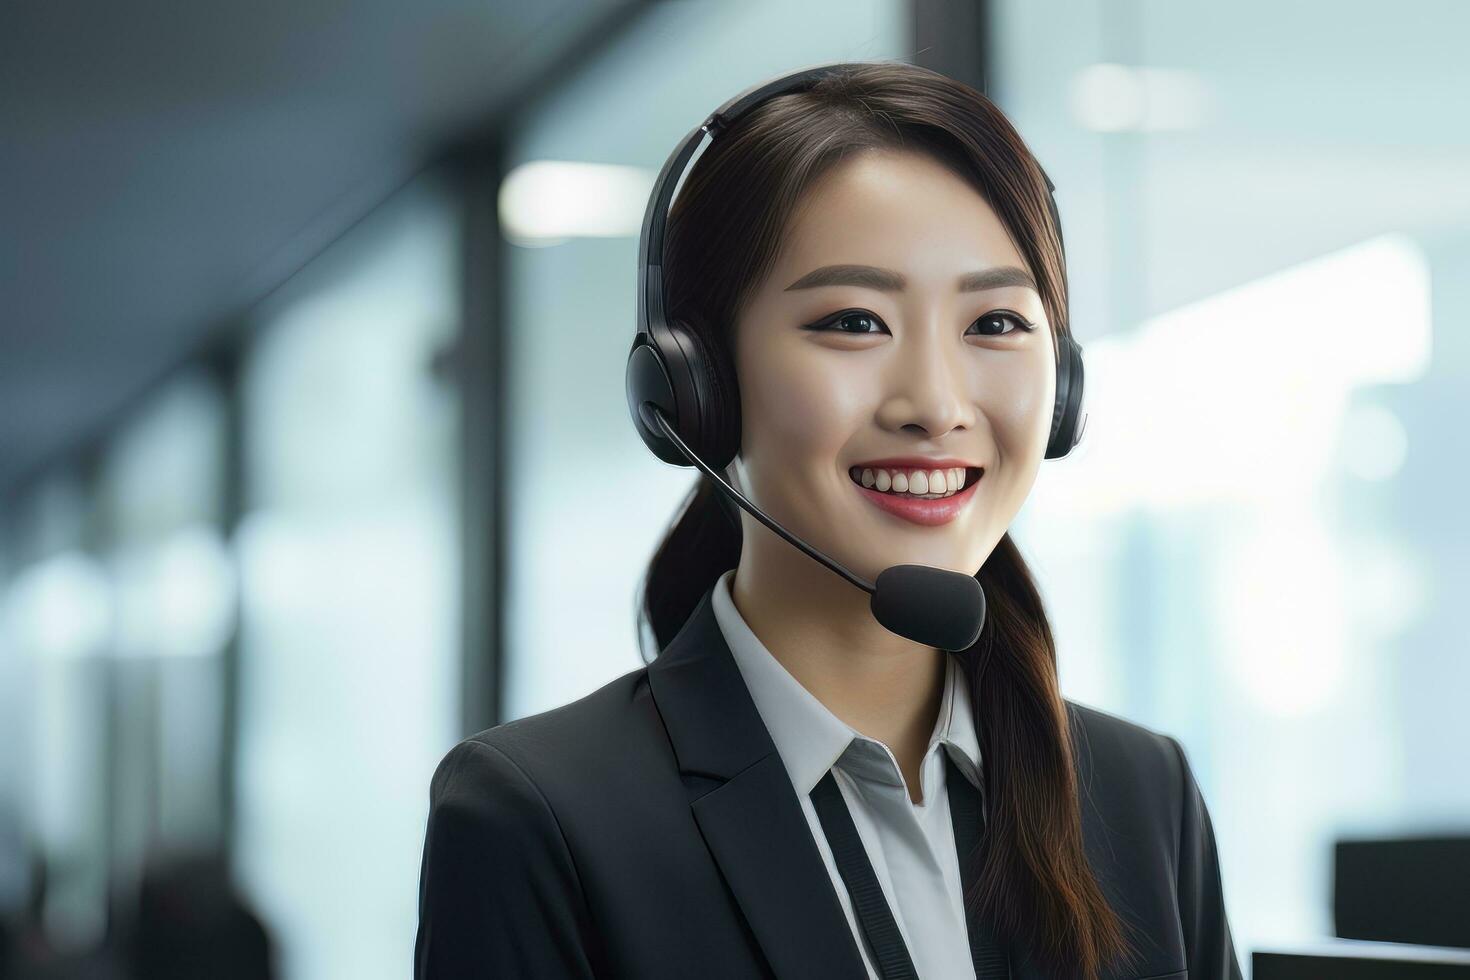 portret van een mooi Aziatisch klant onderhoud exploitant, telefoontje centrum arbeider pratend door koptelefoon met klant in modern kantoor. foto